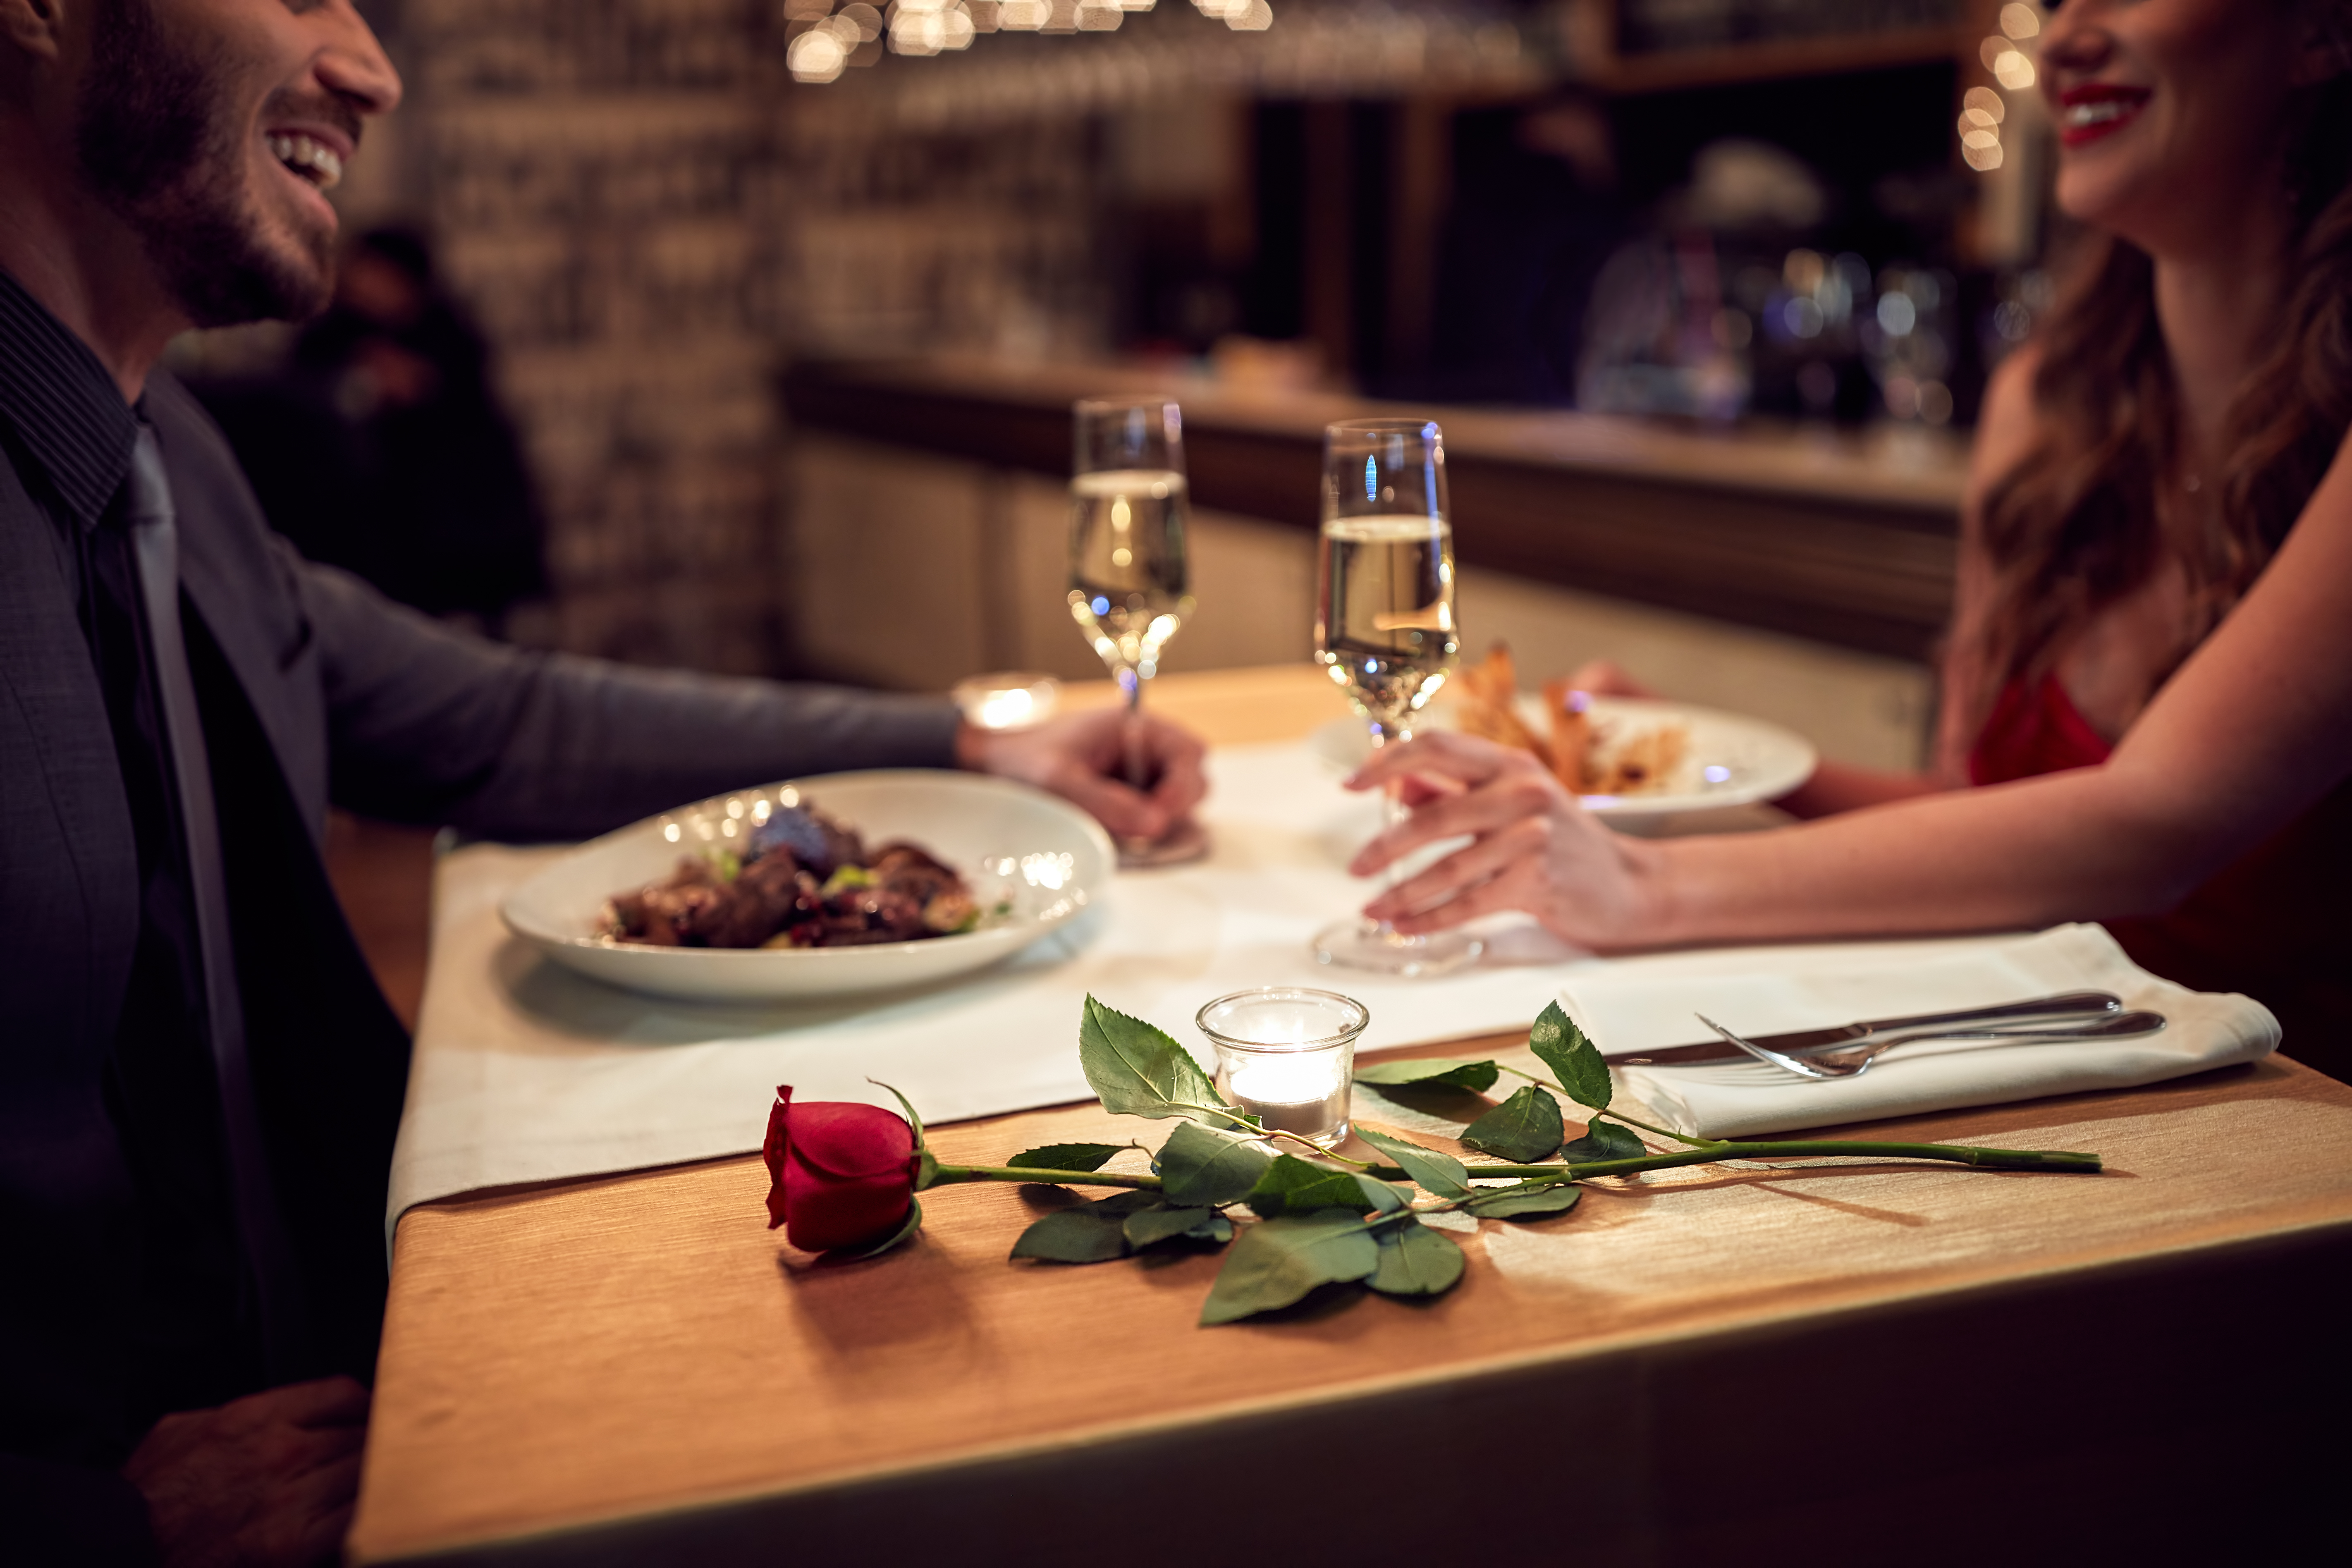 Un couple profite d'un dîner romantique | Source : Shutterstock